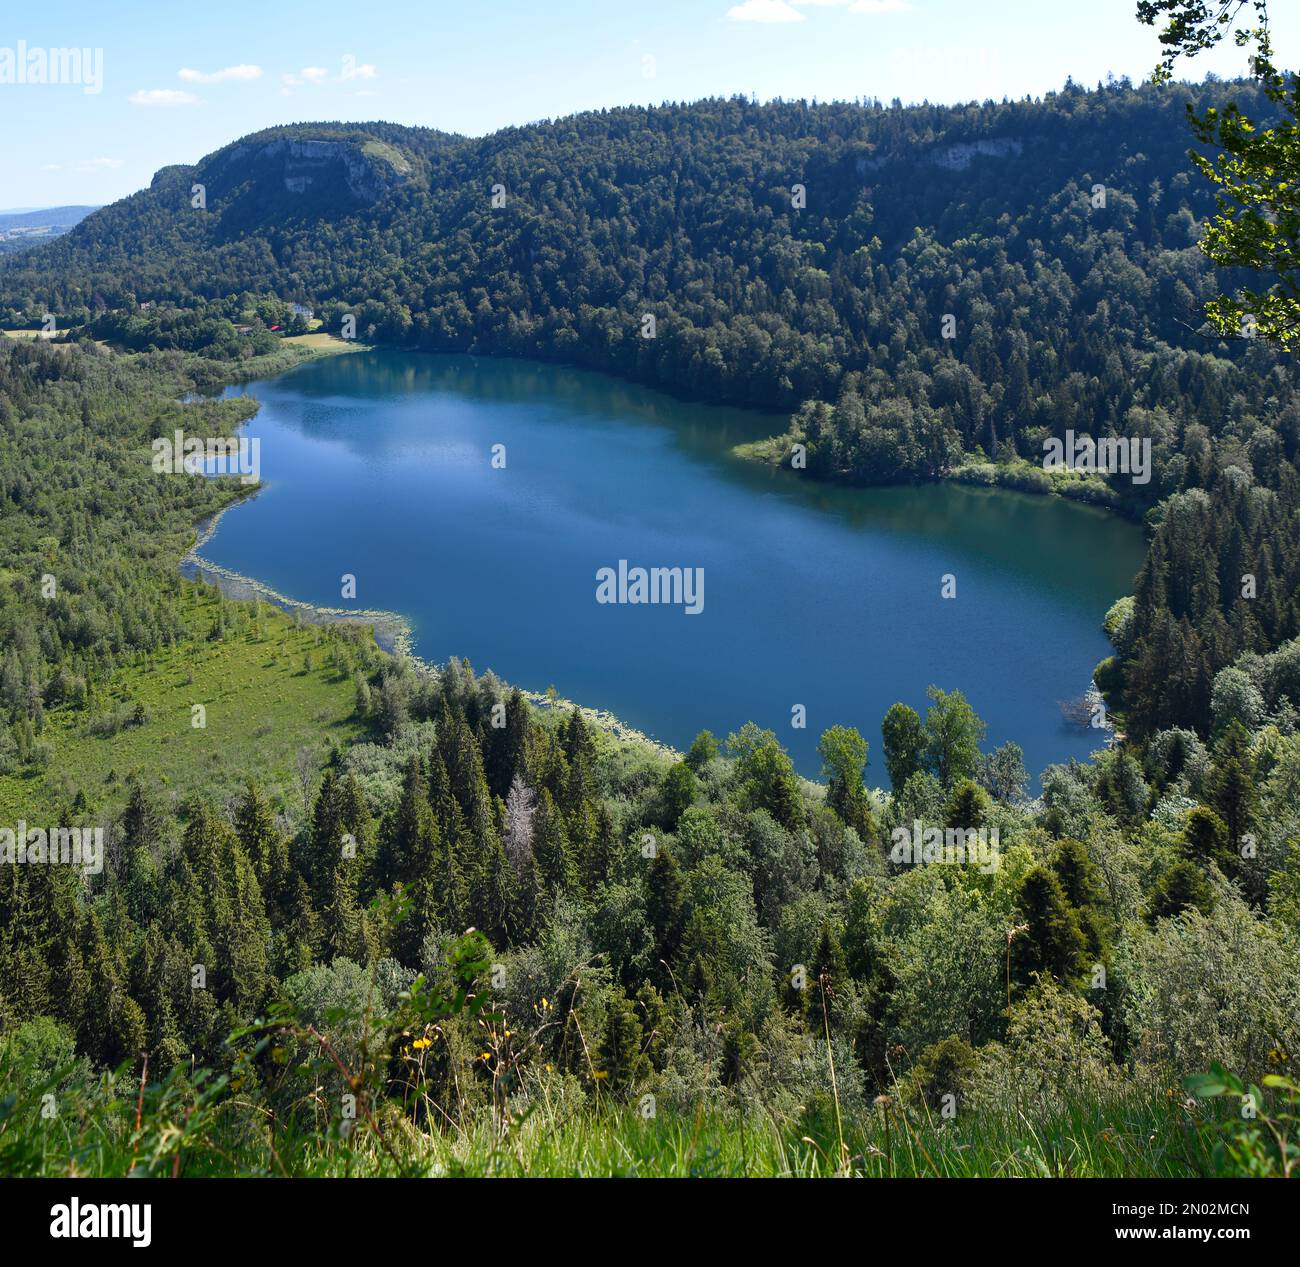 beautiful lake Bonlieu jura, france Stock Photo - Alamy